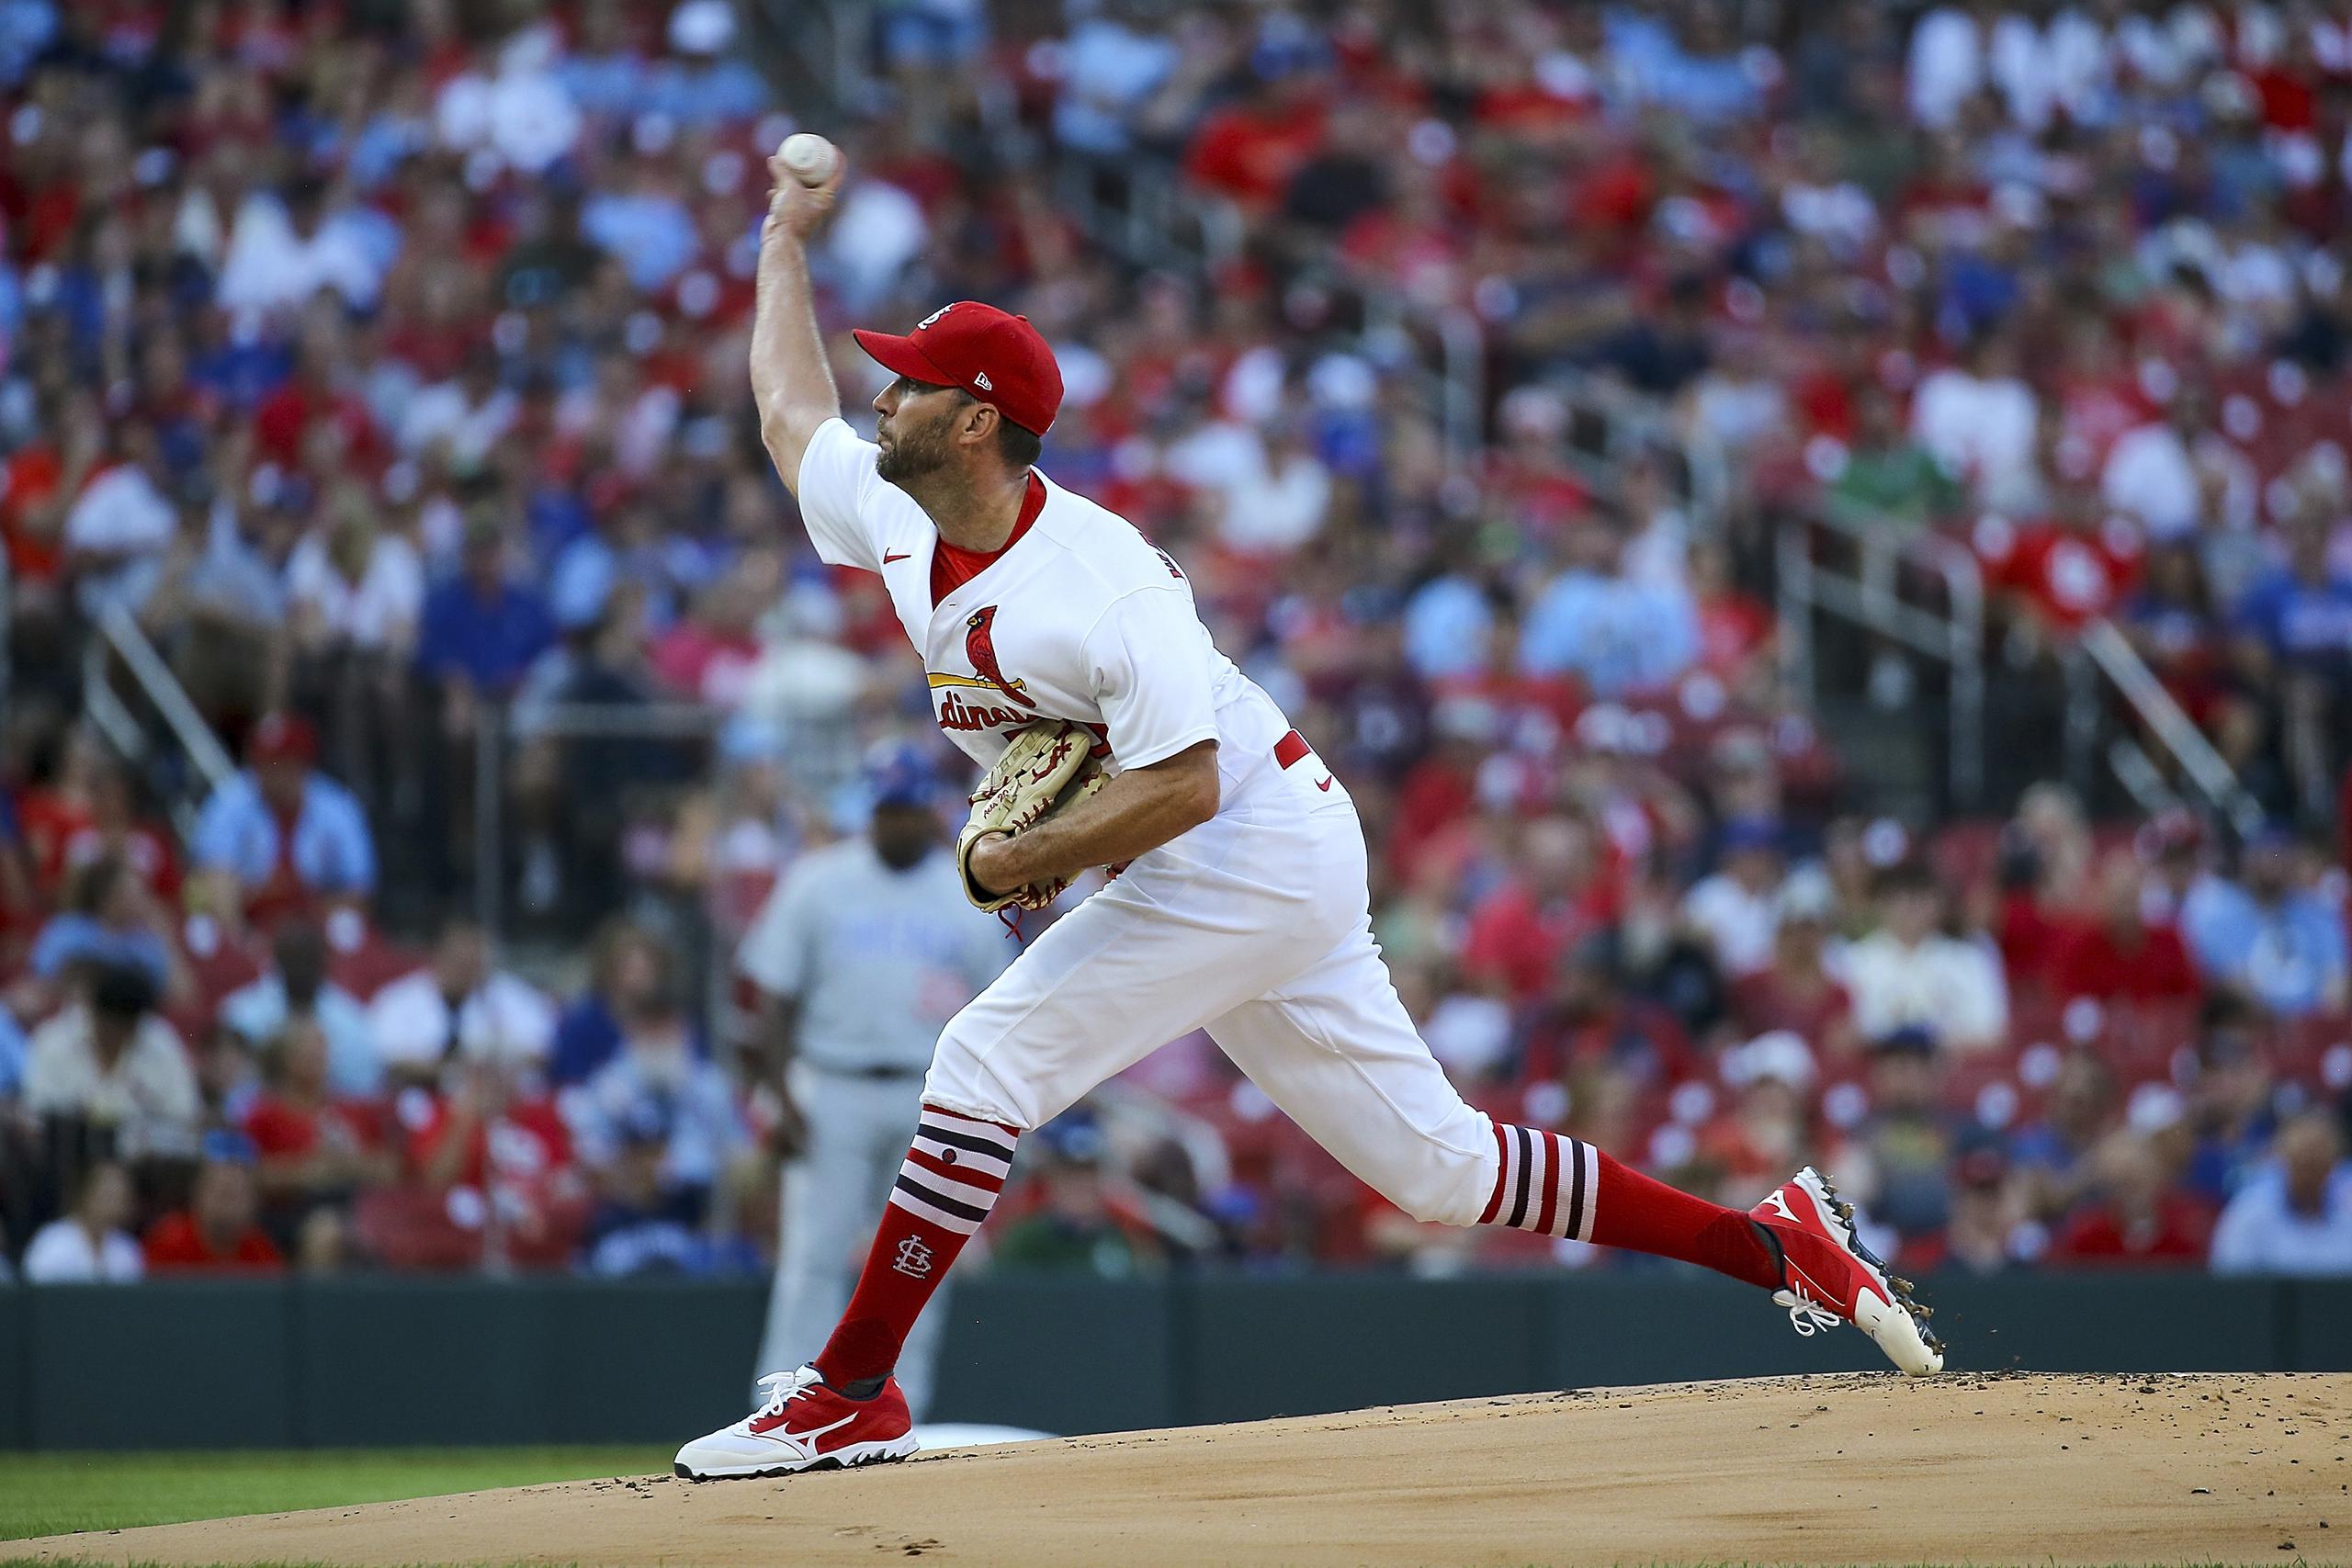 El derecho Adam Wainwright, de los Cardinals de San Luis, realiza un lanzamiento a su compañero de batería, Yadier Molina, durante el choque del martes ante los Cubs de Chicago.